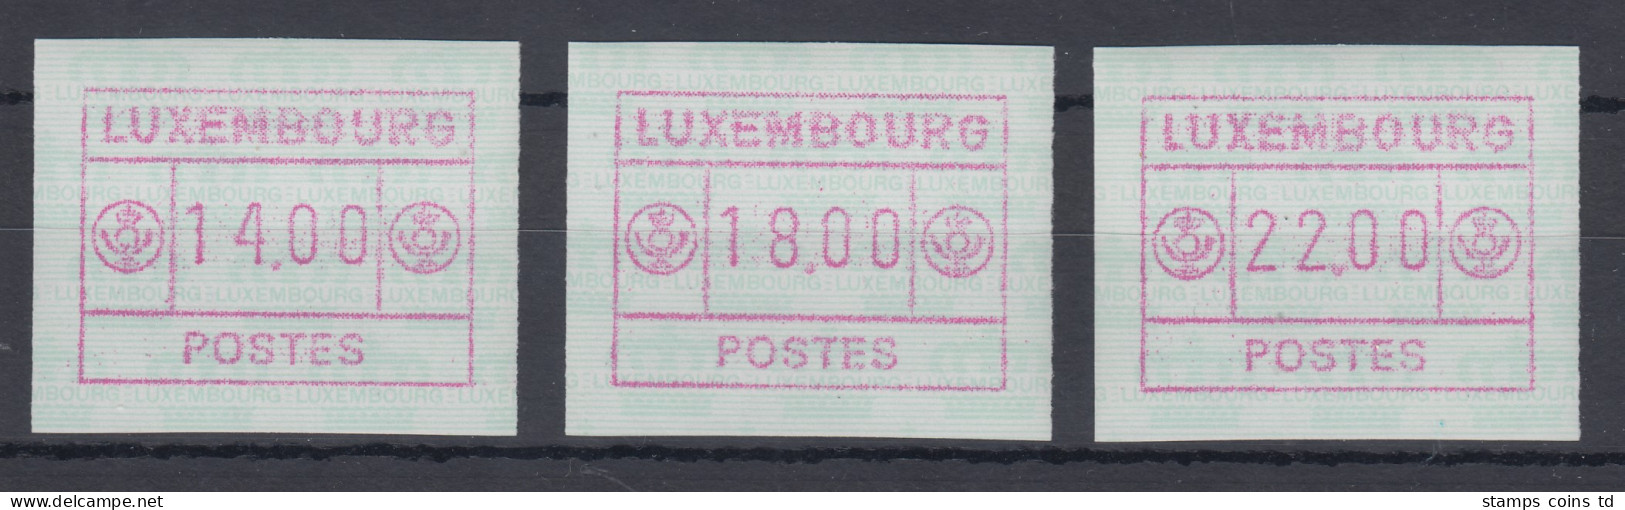 Luxemburg ATM Kleines POSTES Mi.-Nr. 2 Satz 14-18-22 Farbe Rotlila ** - Postage Labels